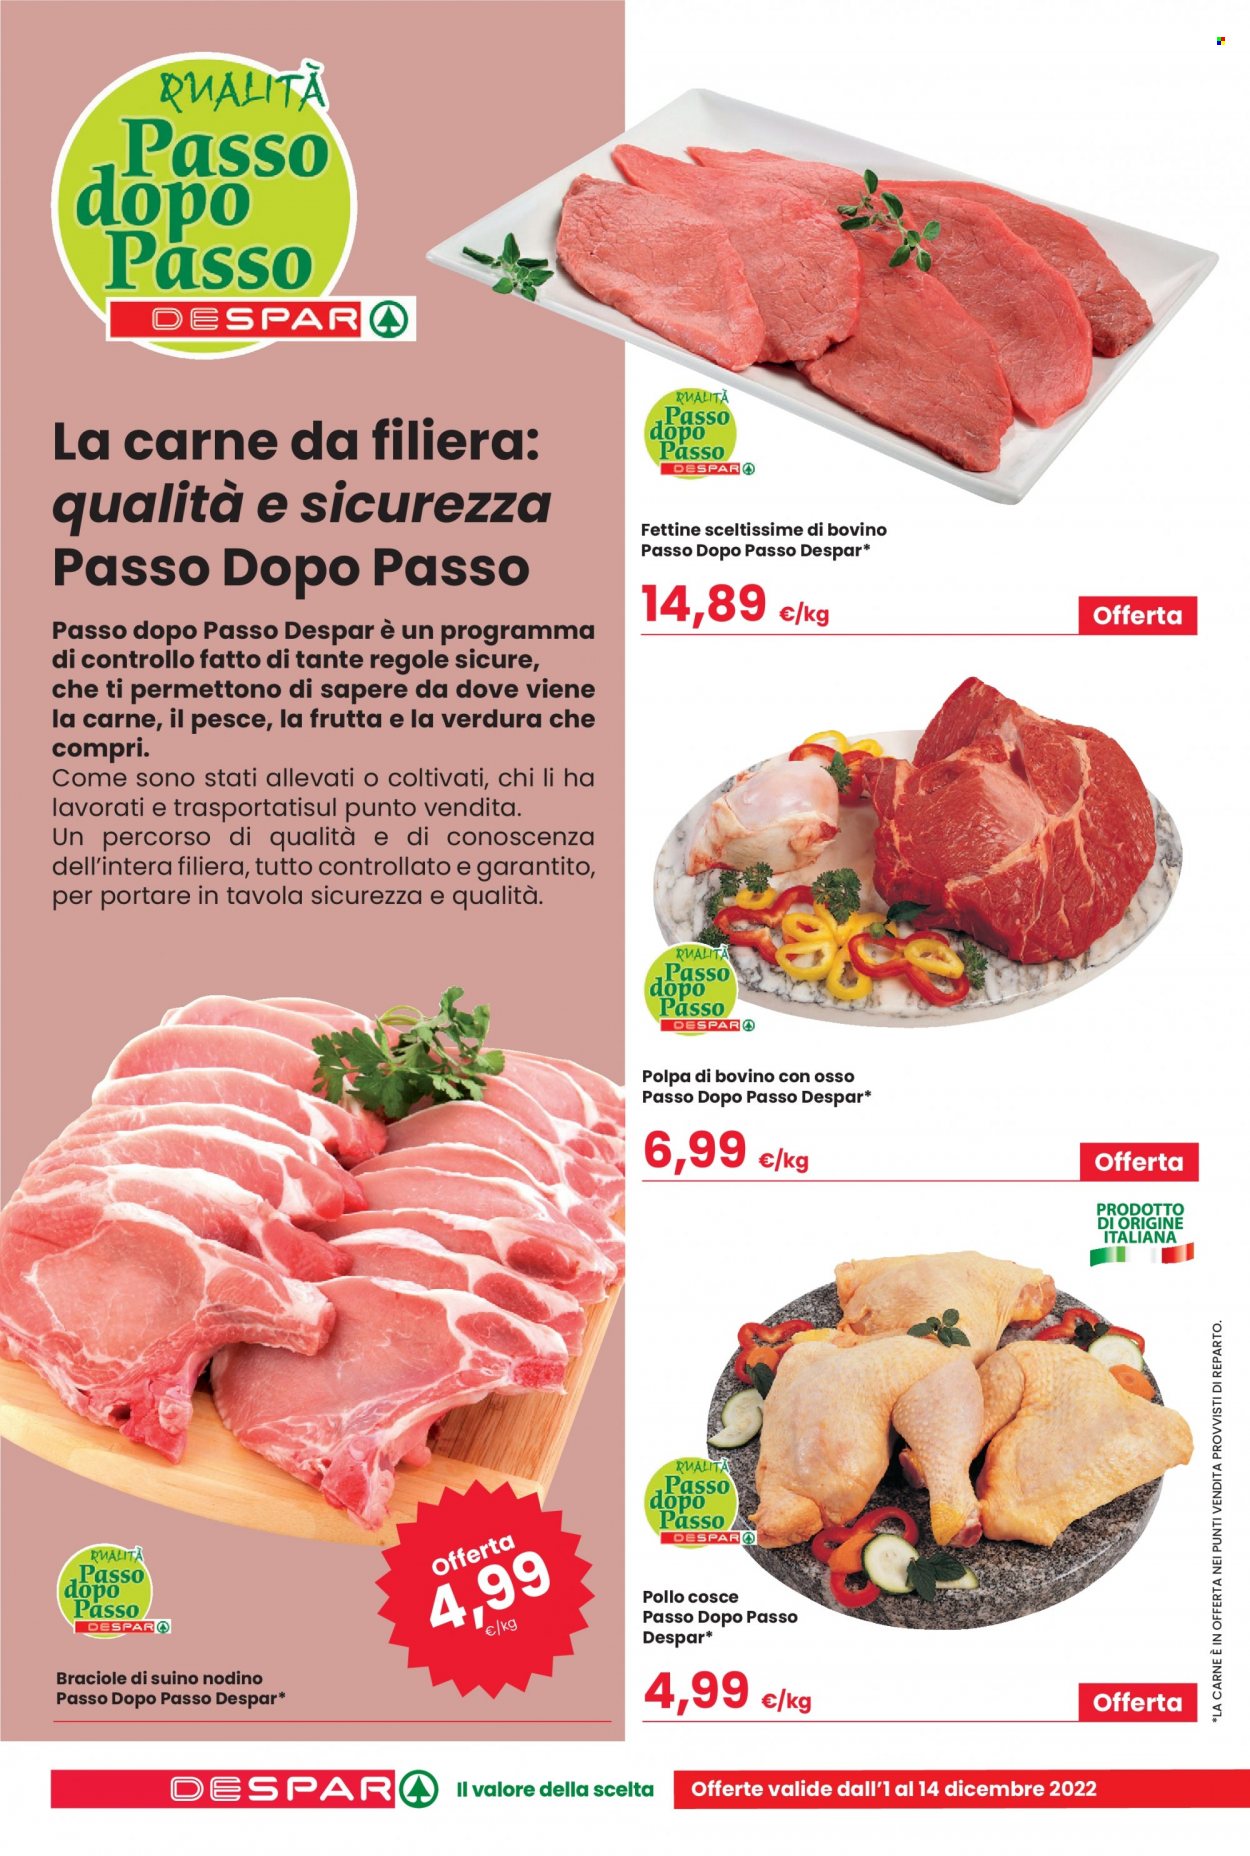 thumbnail - Volantino Despar - 1/12/2022 - 14/12/2022 - Prodotti in offerta - pollo, manzo, polpa di manzo, fettine di bovino, braciole di maiale, suino. Pagina 4.